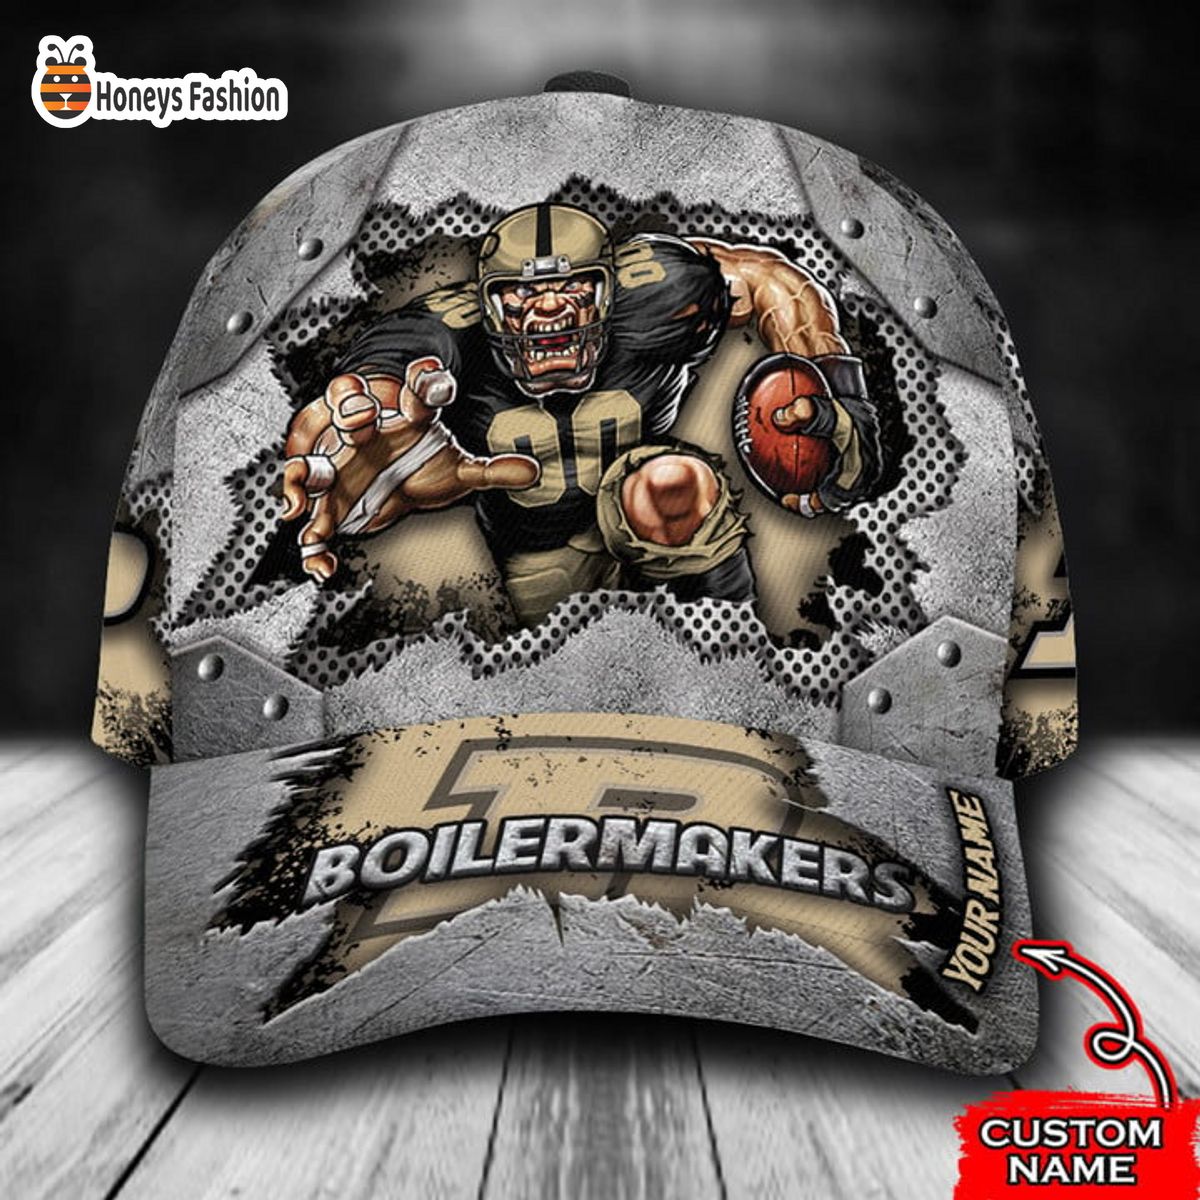 Purdue Boilermakers mascot custom name classic cap